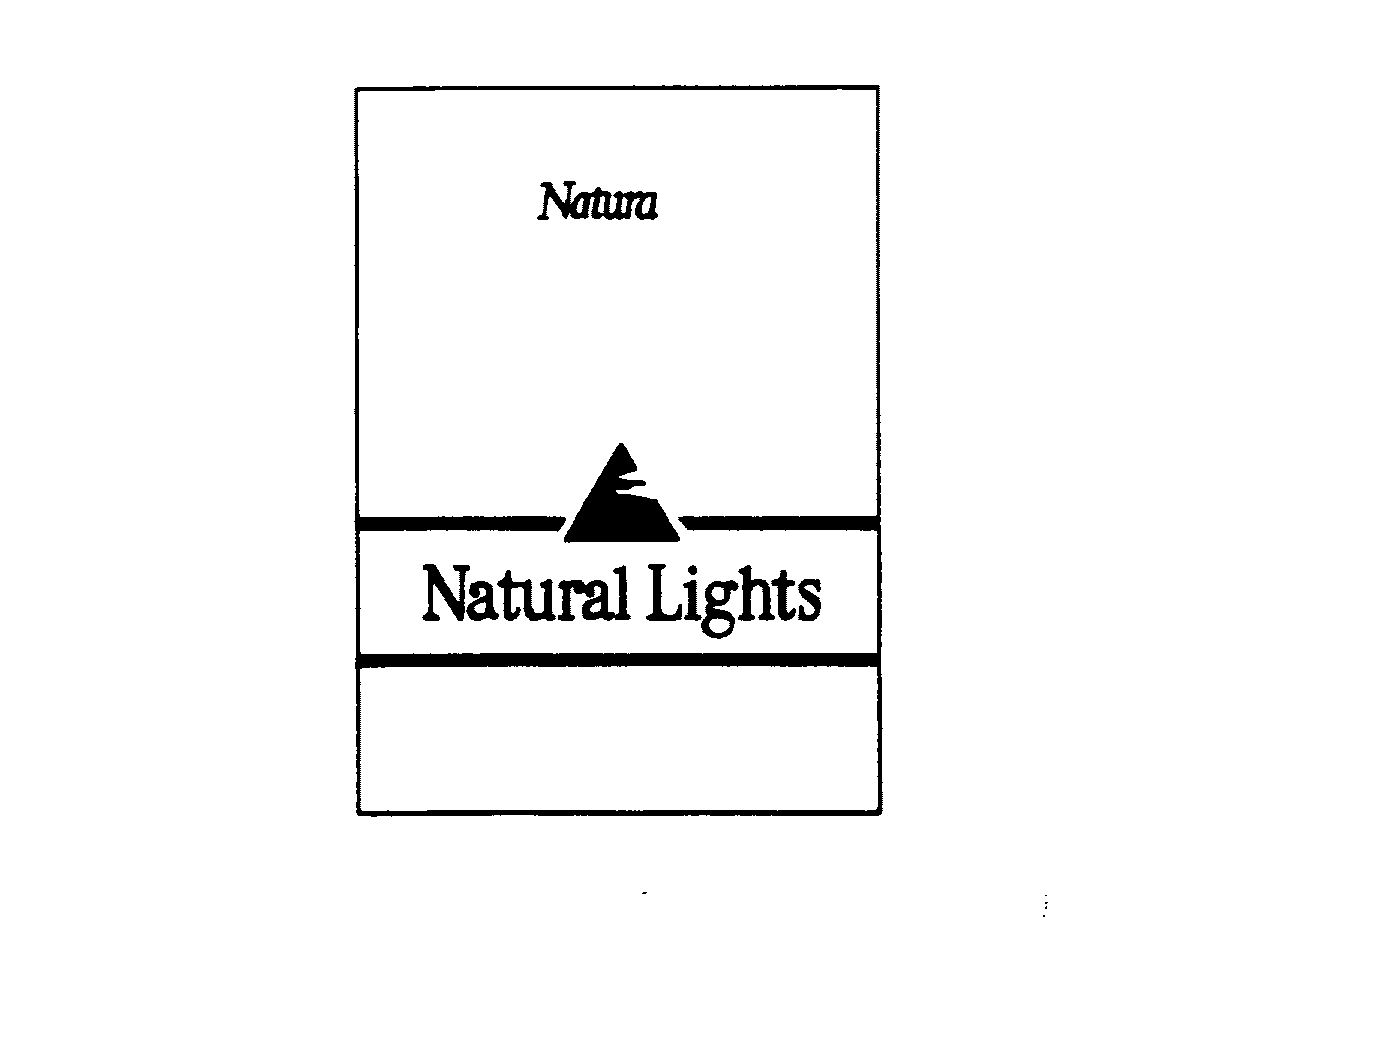  NATURA NATURAL LIGHTS